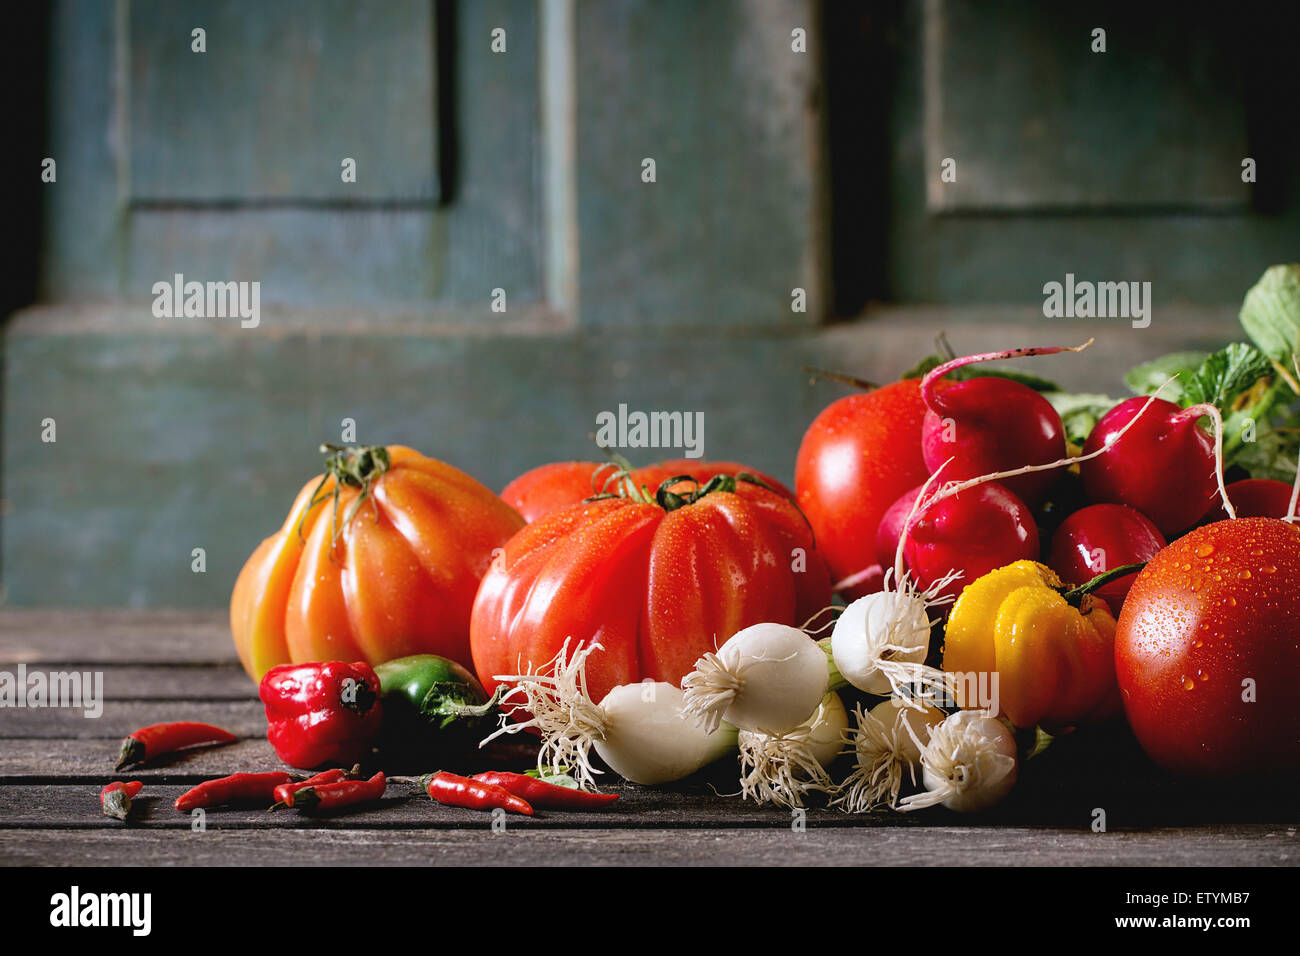 Tas de légumes colorés frais mûrs tomates, piments, l'oignon vert et bande de radis plus vieille table en bois. La rouille noire Banque D'Images